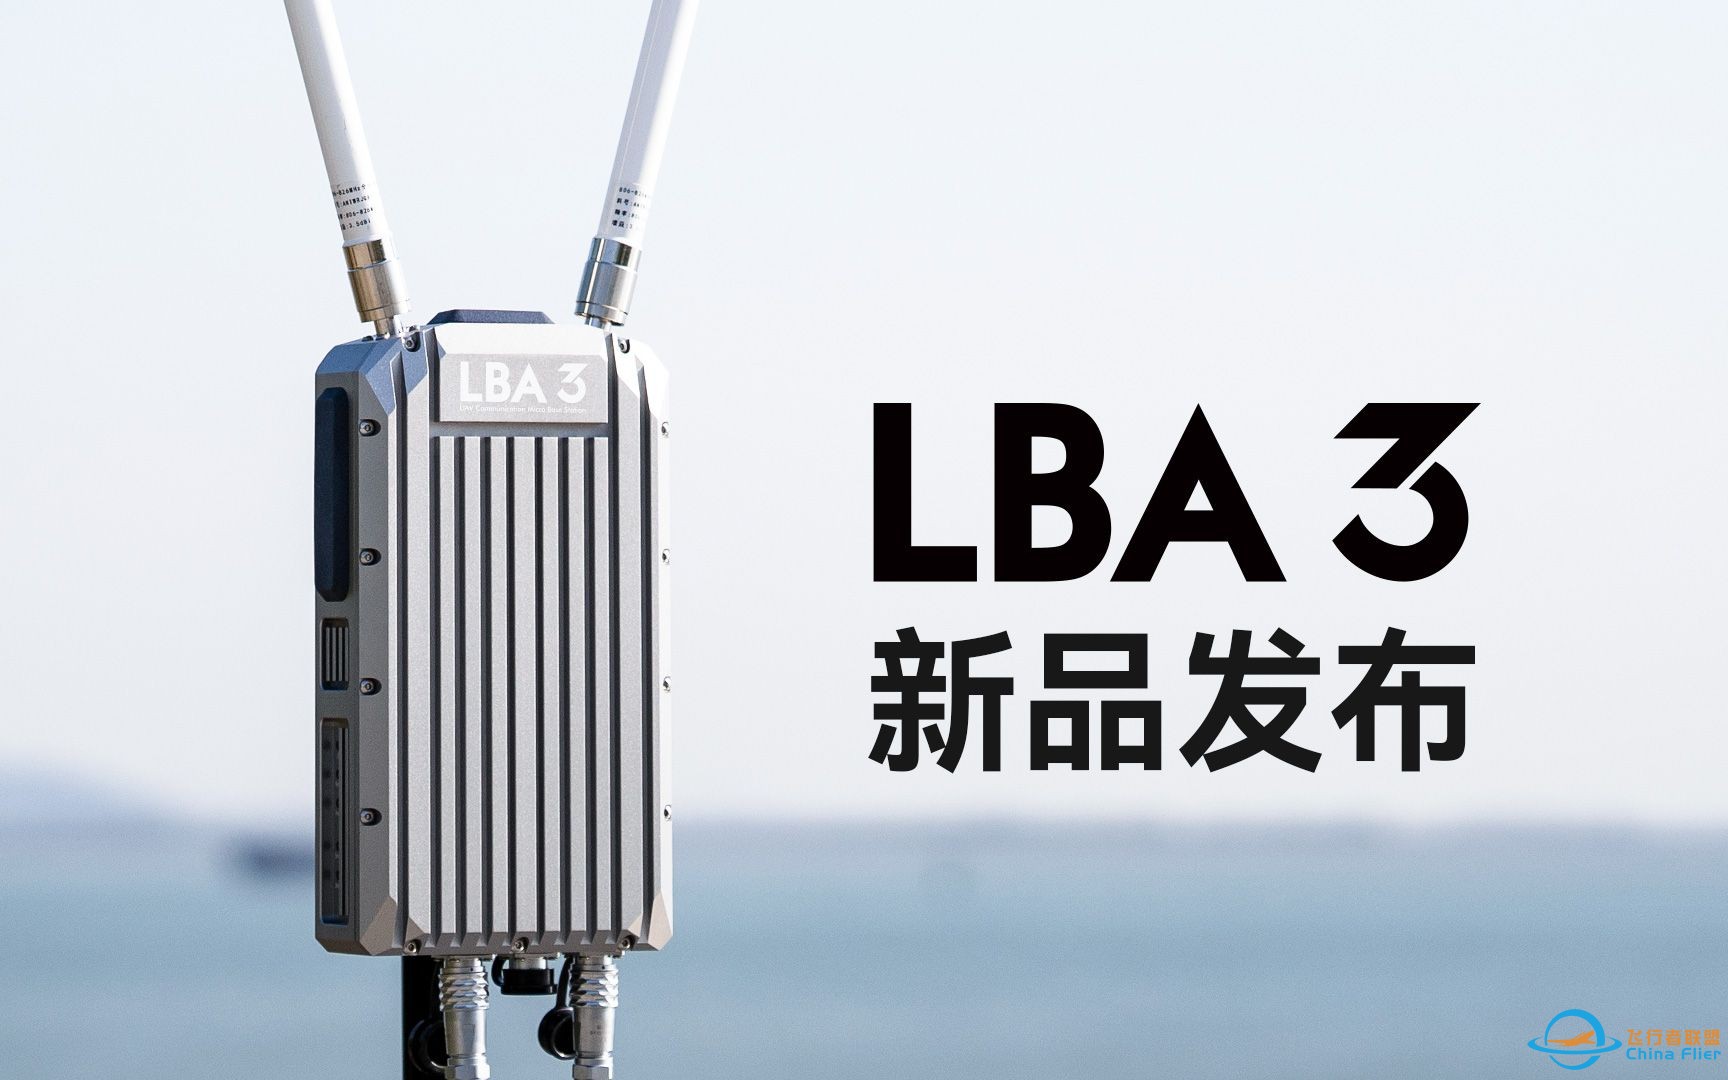 新品上市 | LBA 3无人机通信微基站 远距离图数传输 巡检编队应用首选-1.jpg